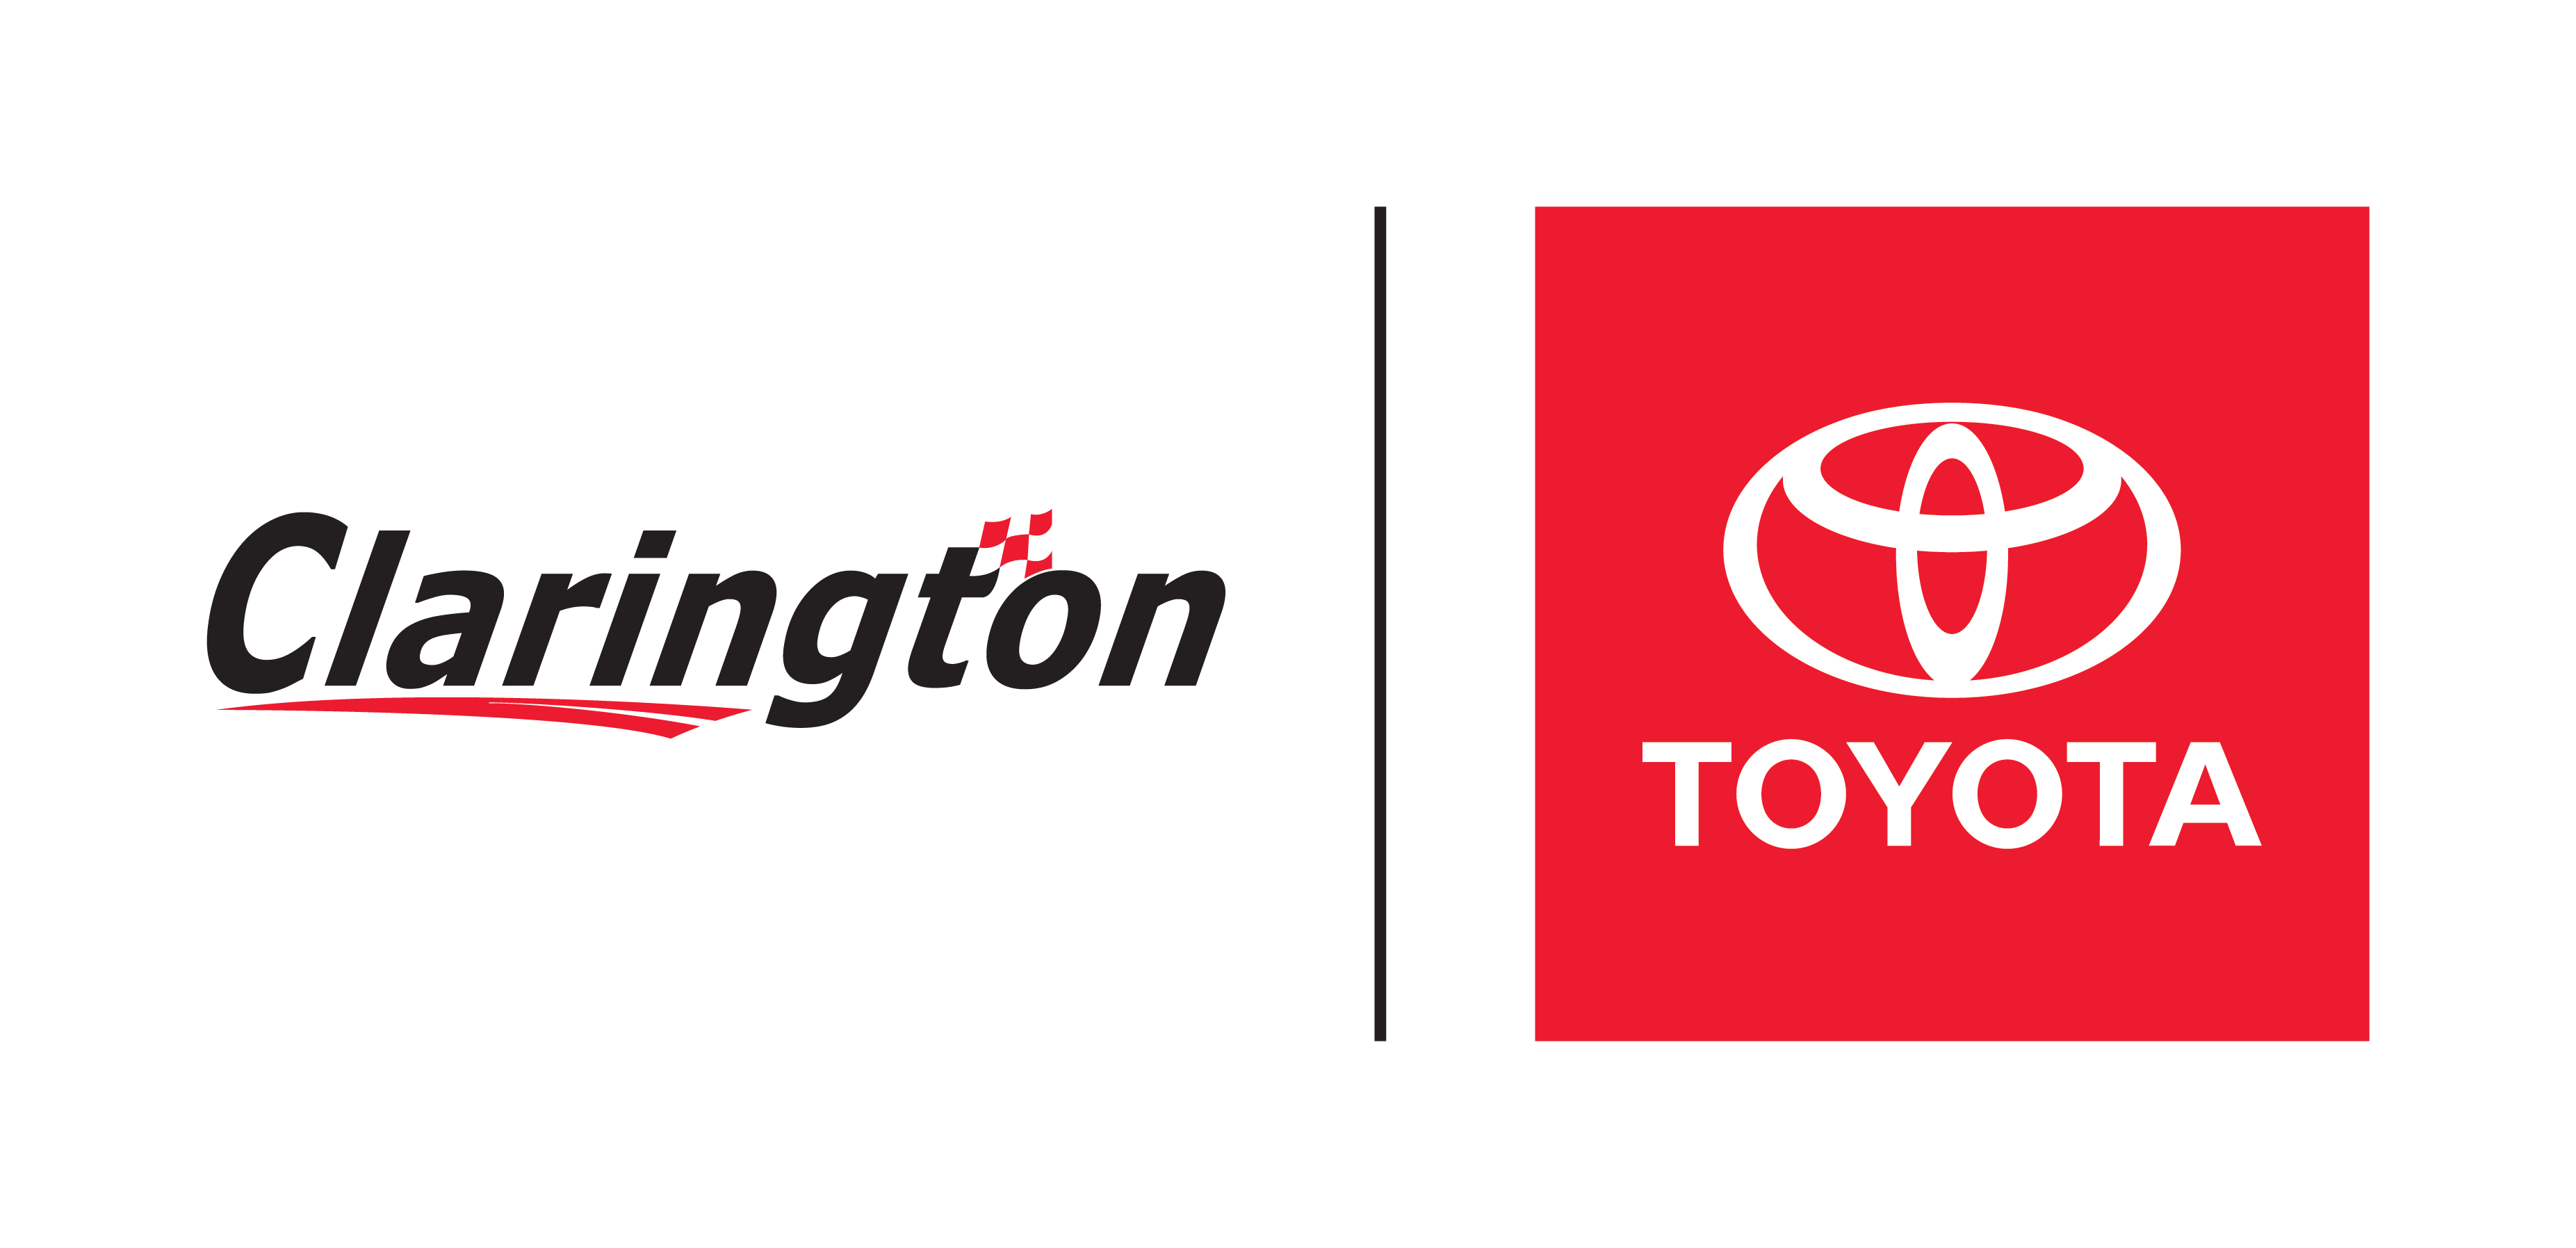 Clarington_Toyota___non_standard_4COLOUR